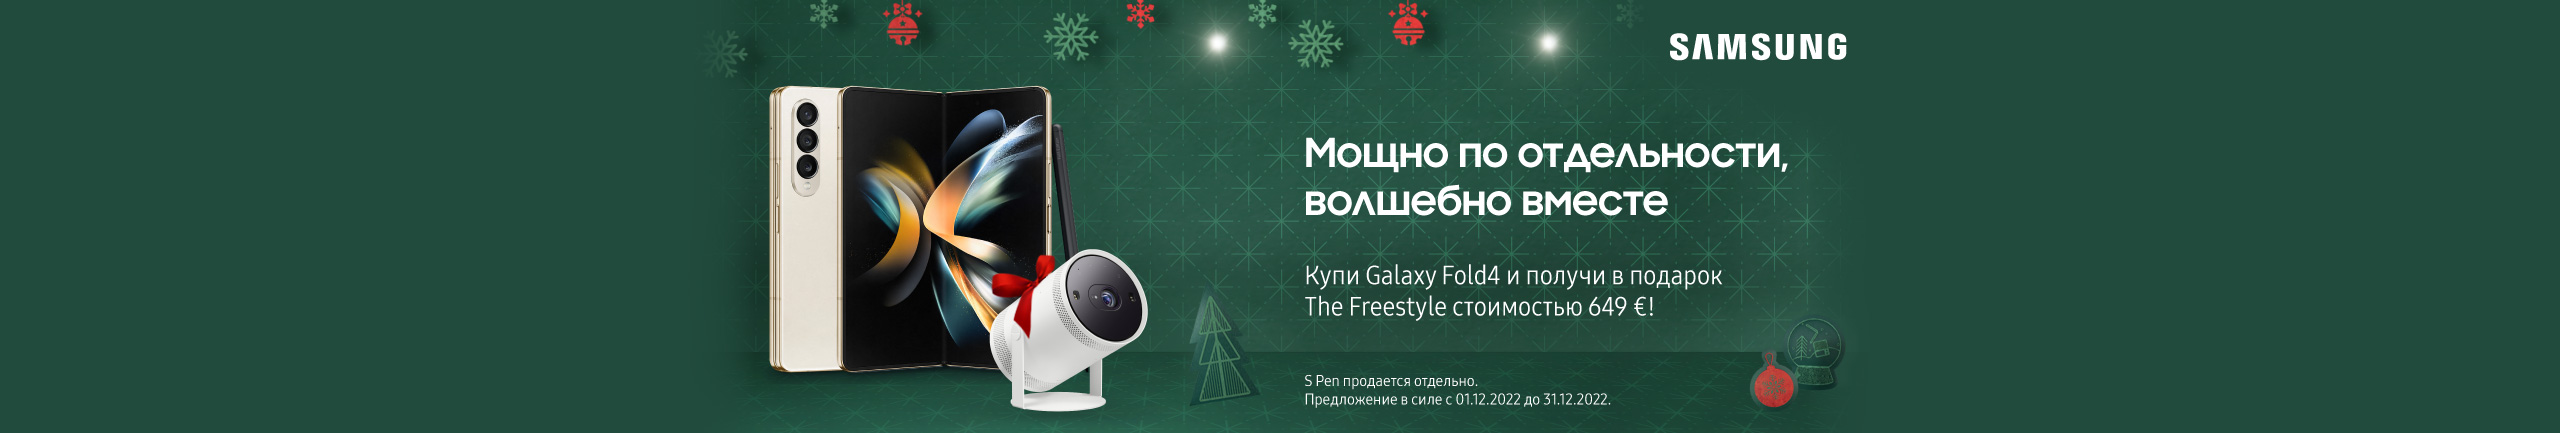 В подарок к смартфону Samsung Galaxy Fold4 – проектор The Freestyle.